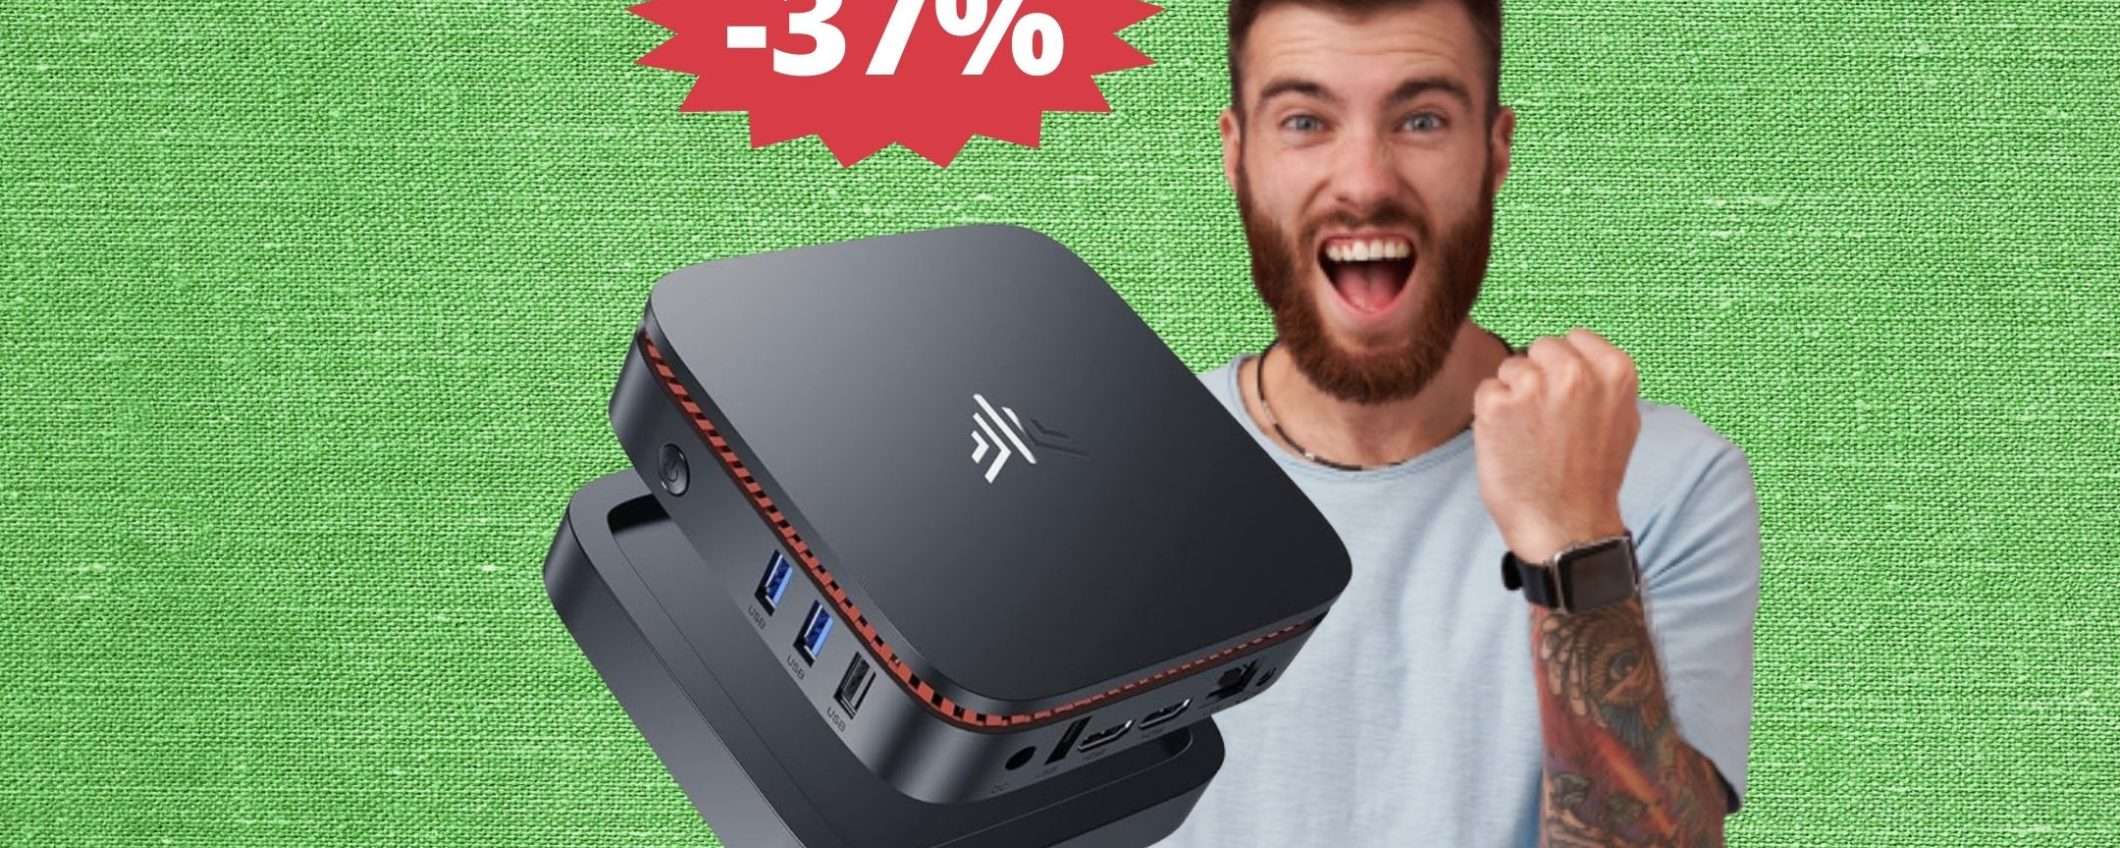 Mini PC NiPoGi: prezzo RIDICOLO su Amazon (-37%)